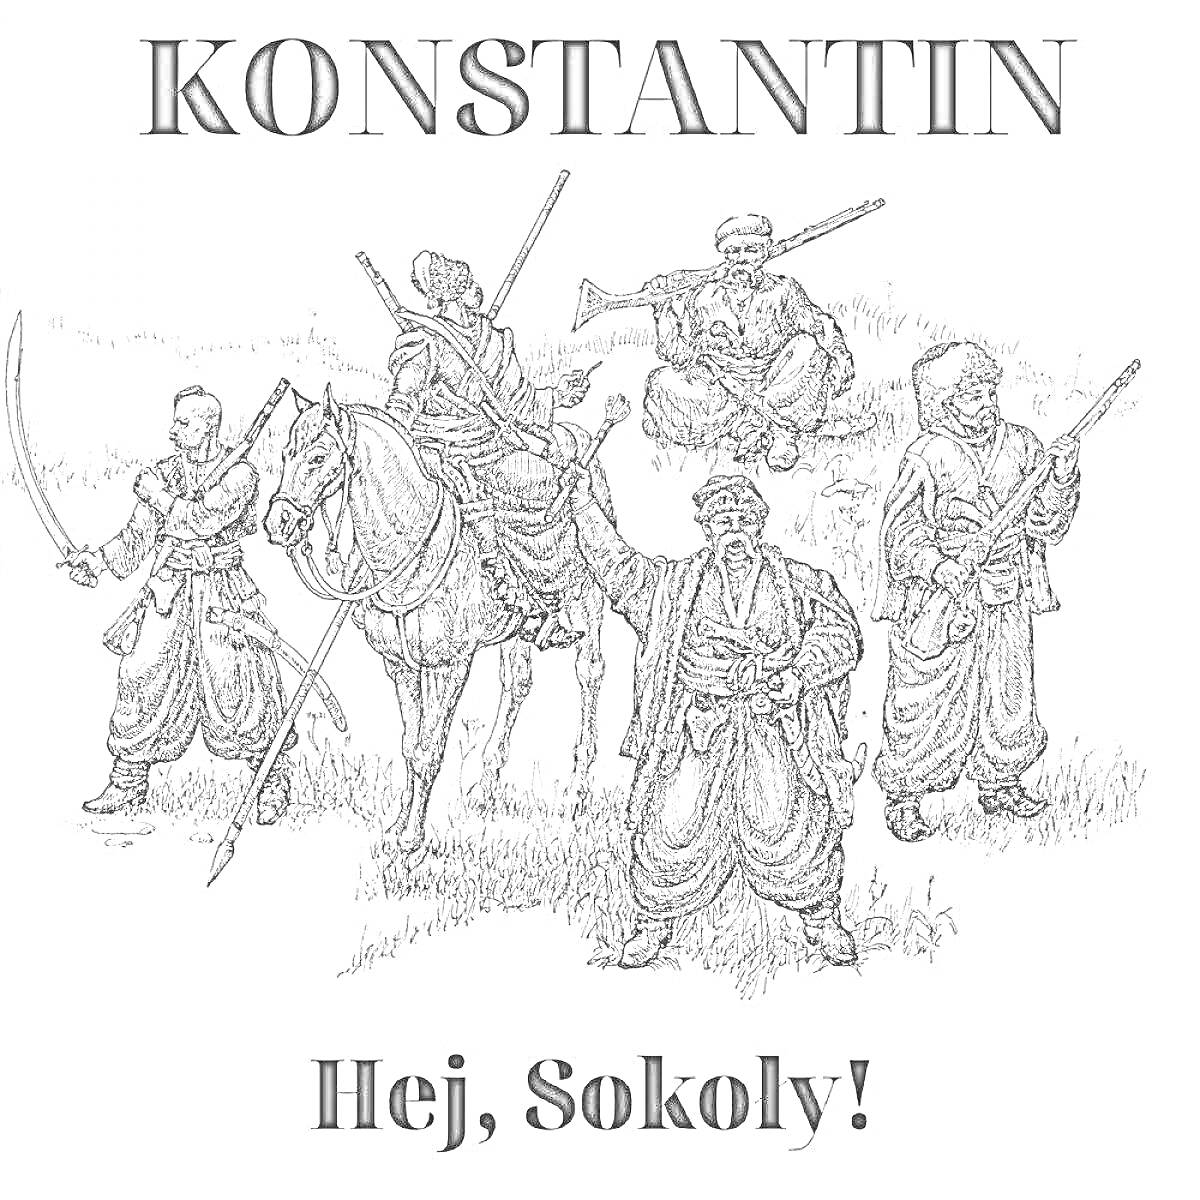 Раскраска Группа казаков с мечами, мушкетами и топорами на лошади и пешком, надписи KONSTANTIN и Hej, Sokoly!